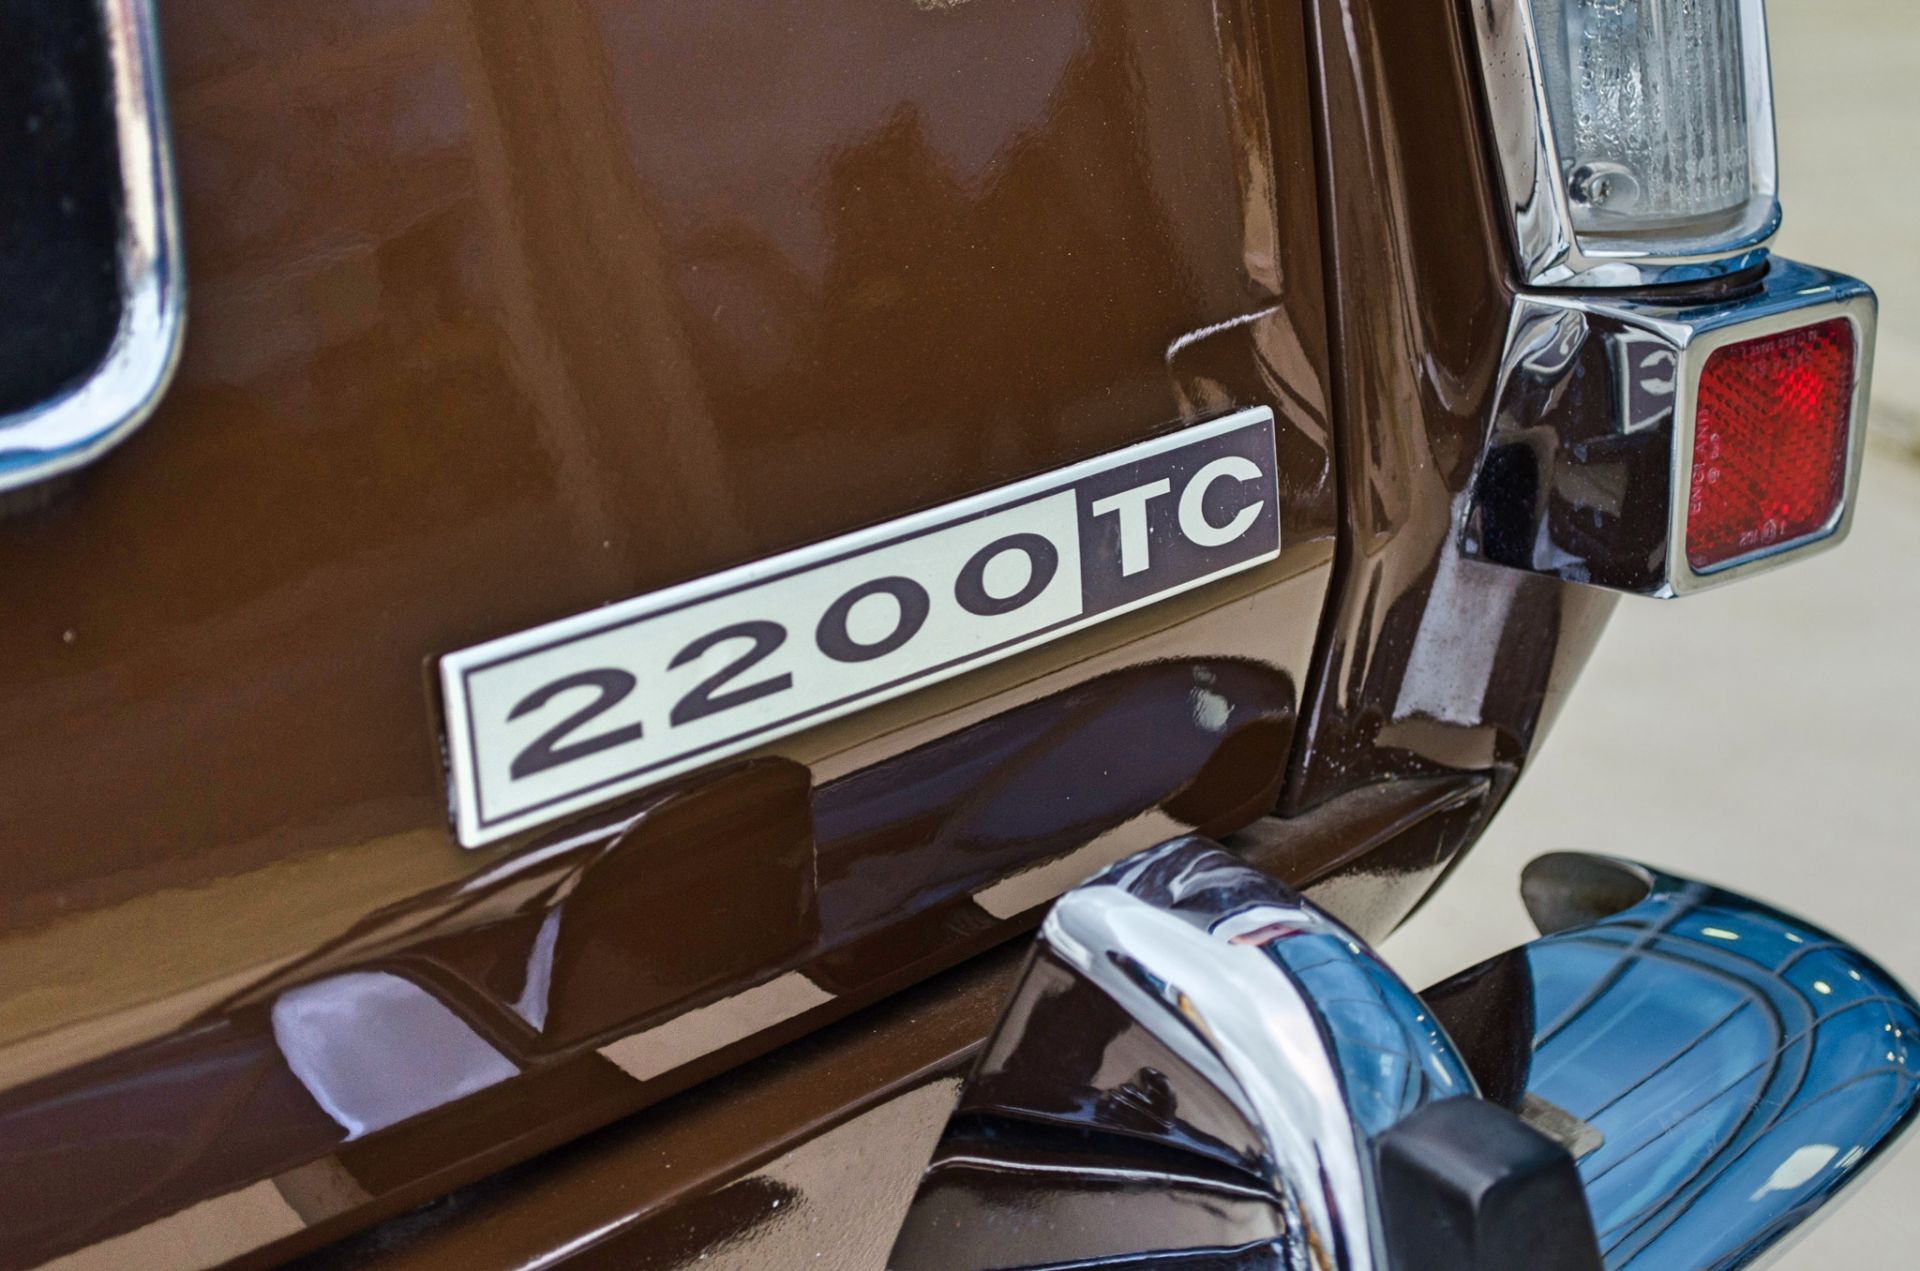 1975 Rover 2200TC 2.2 litre 4 door saloon - Image 26 of 53